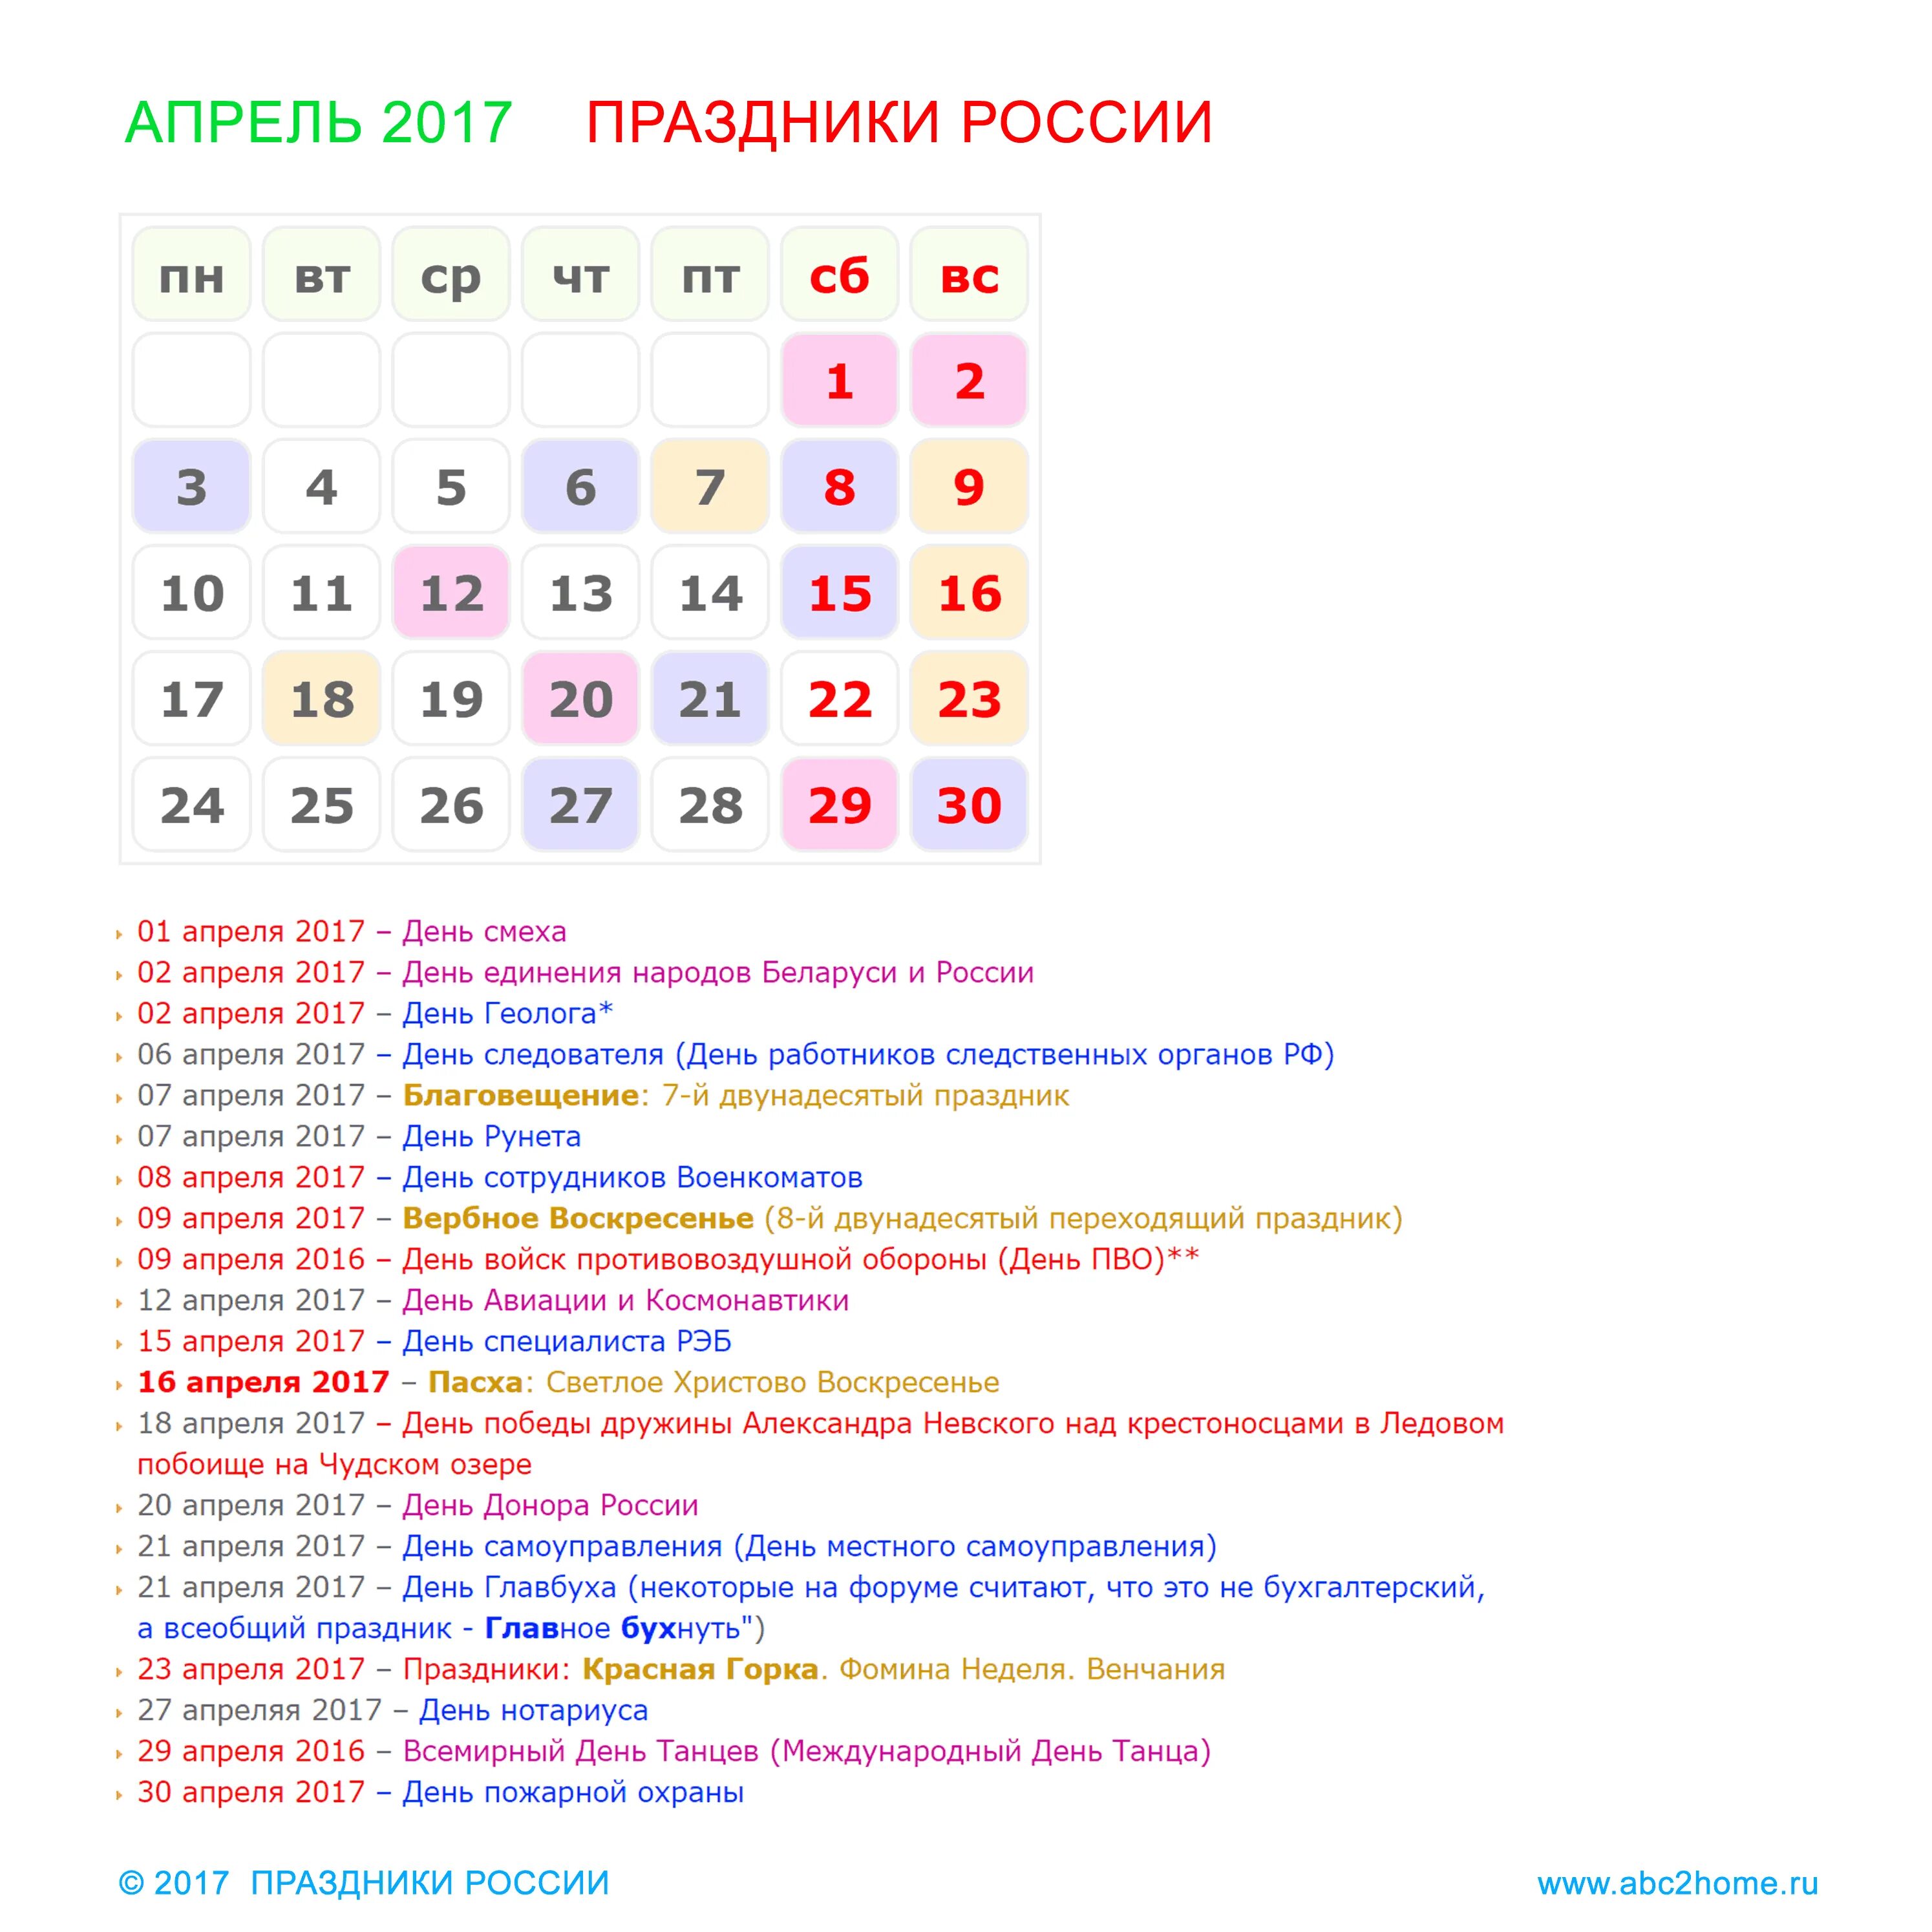 Какие государственные праздники в апреле. Праздники в апреле. Праздники в апреле в России. Календарь российских праздников. Профессиональные праздники в апреле.